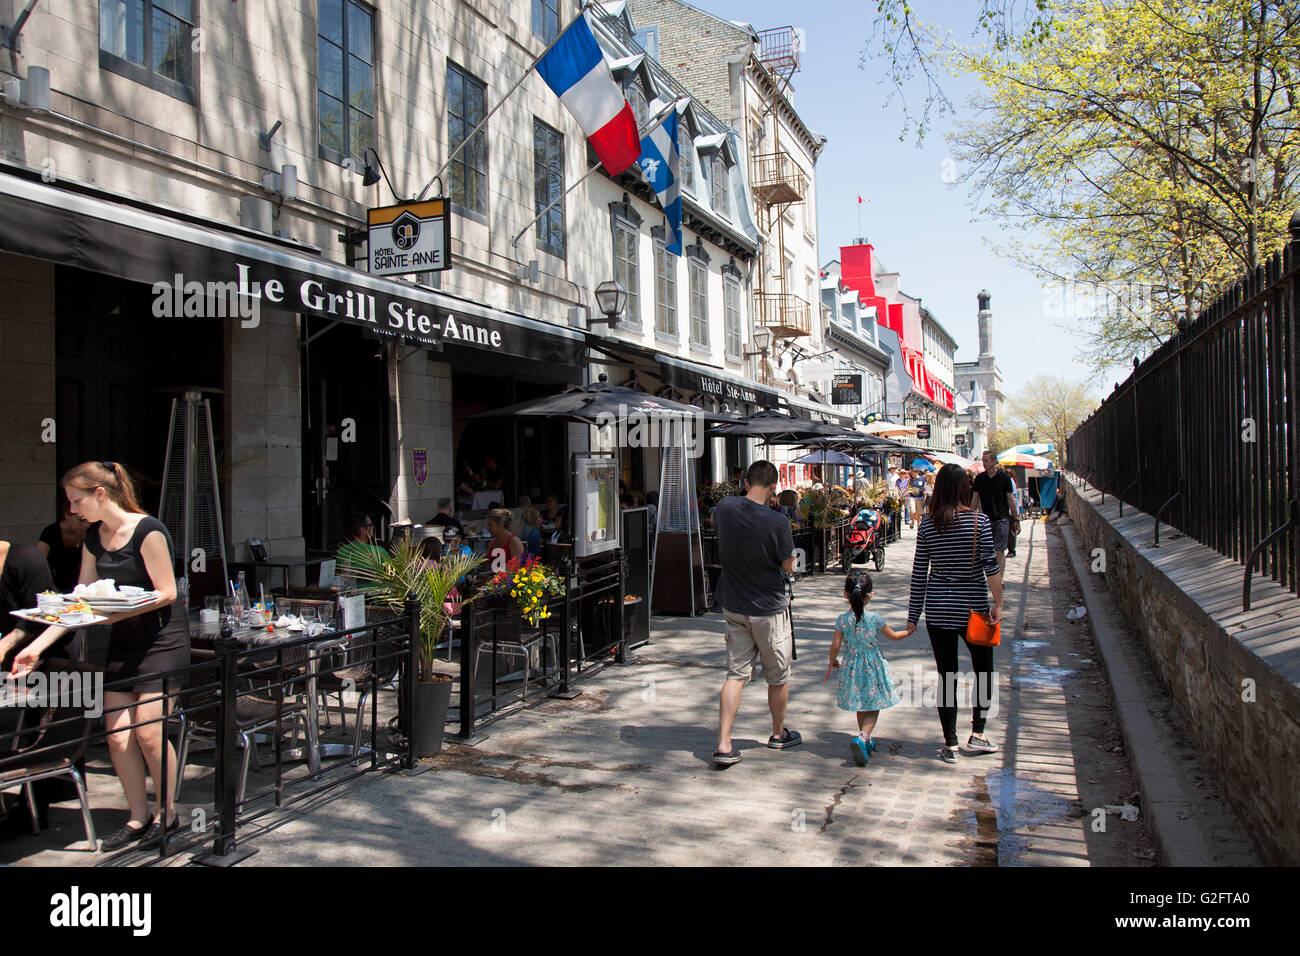 QUEBEC CITY - 23. Mai 2016: Historische Rue St.Anne ist gesäumt von Terrassen und ist ein wichtiges touristisches Ziel in der Stadt Québec. Stockfoto